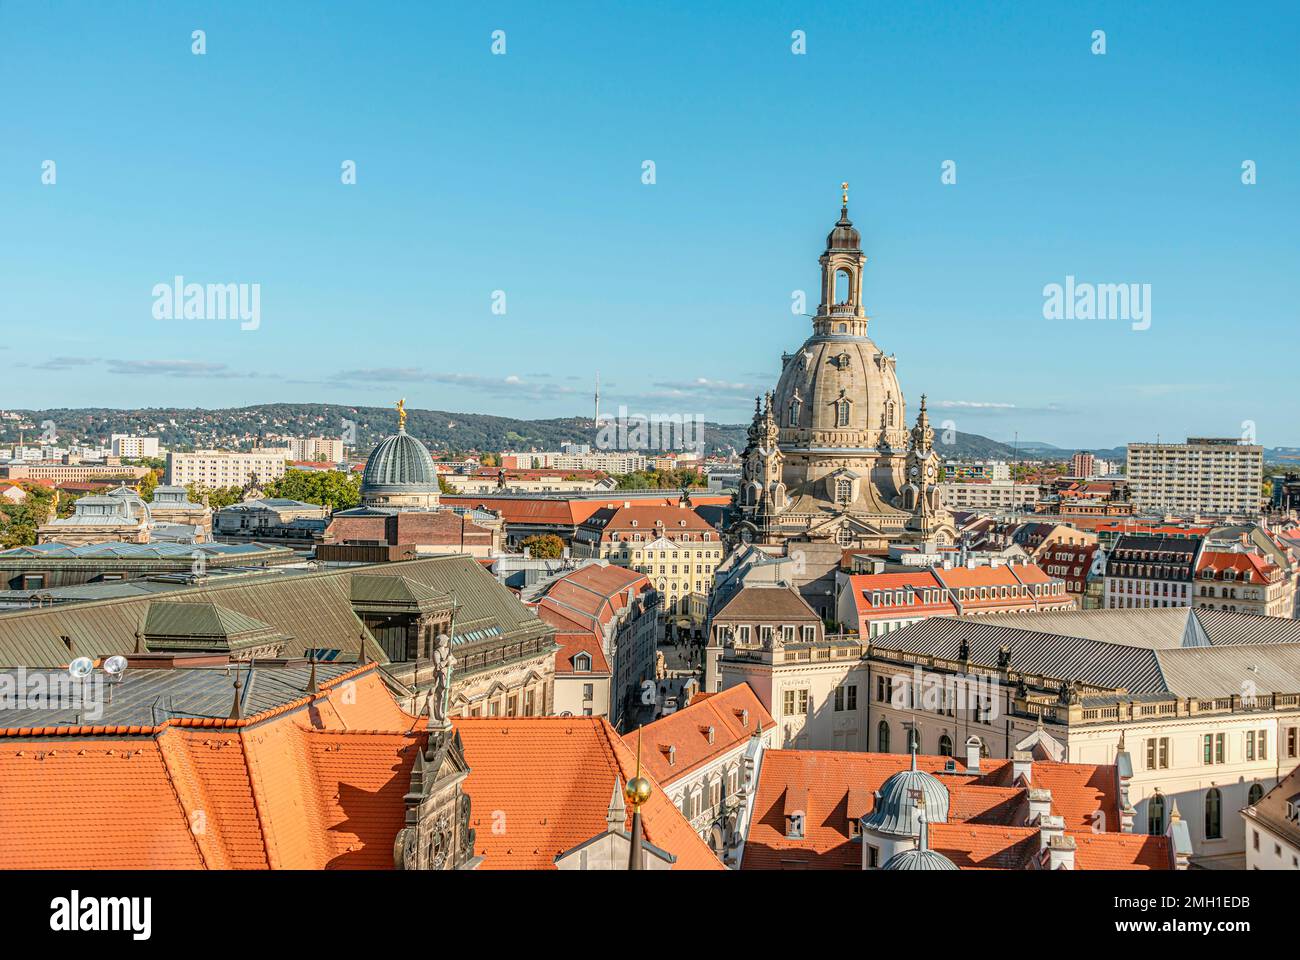 Blick von der Dachterrasse auf die Dresdner Altstadt, Sachsen, Deutschland, von der Aussichtsplattform des Dresdner Schlosses. Stockfoto